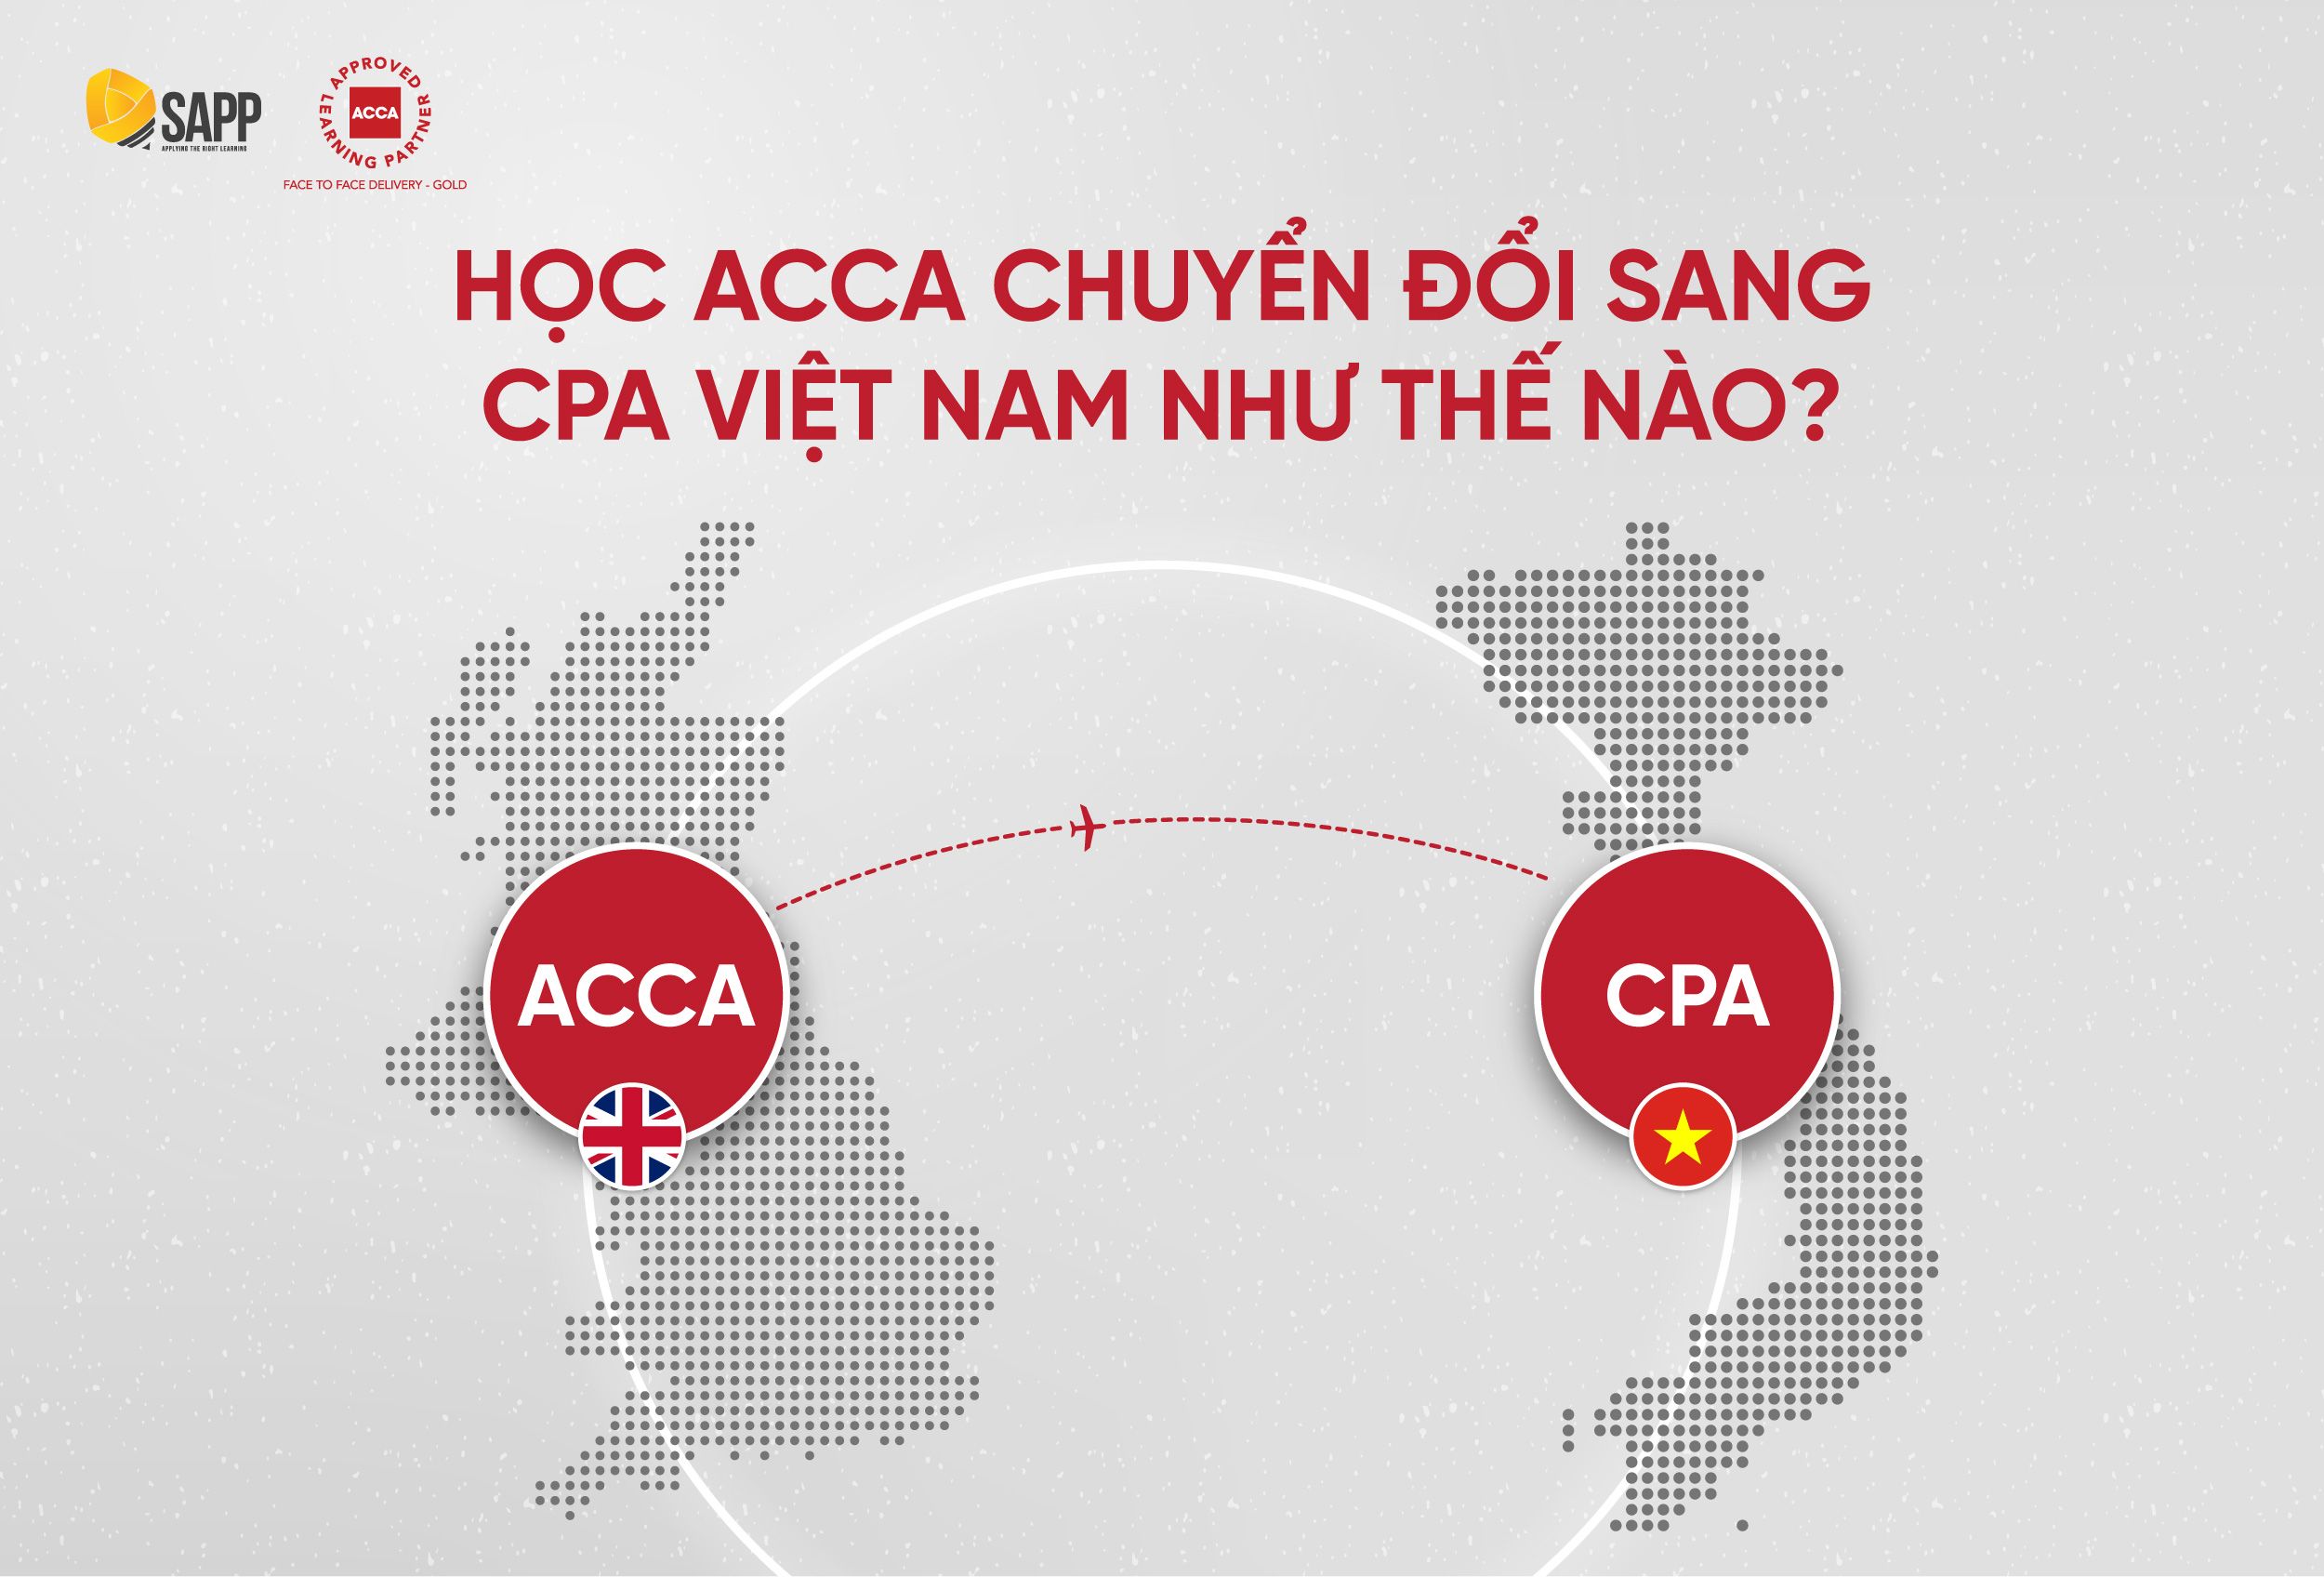 Học ACCA Chuyển Đổi Sang CPA Việt Nam Như Thế Nào?